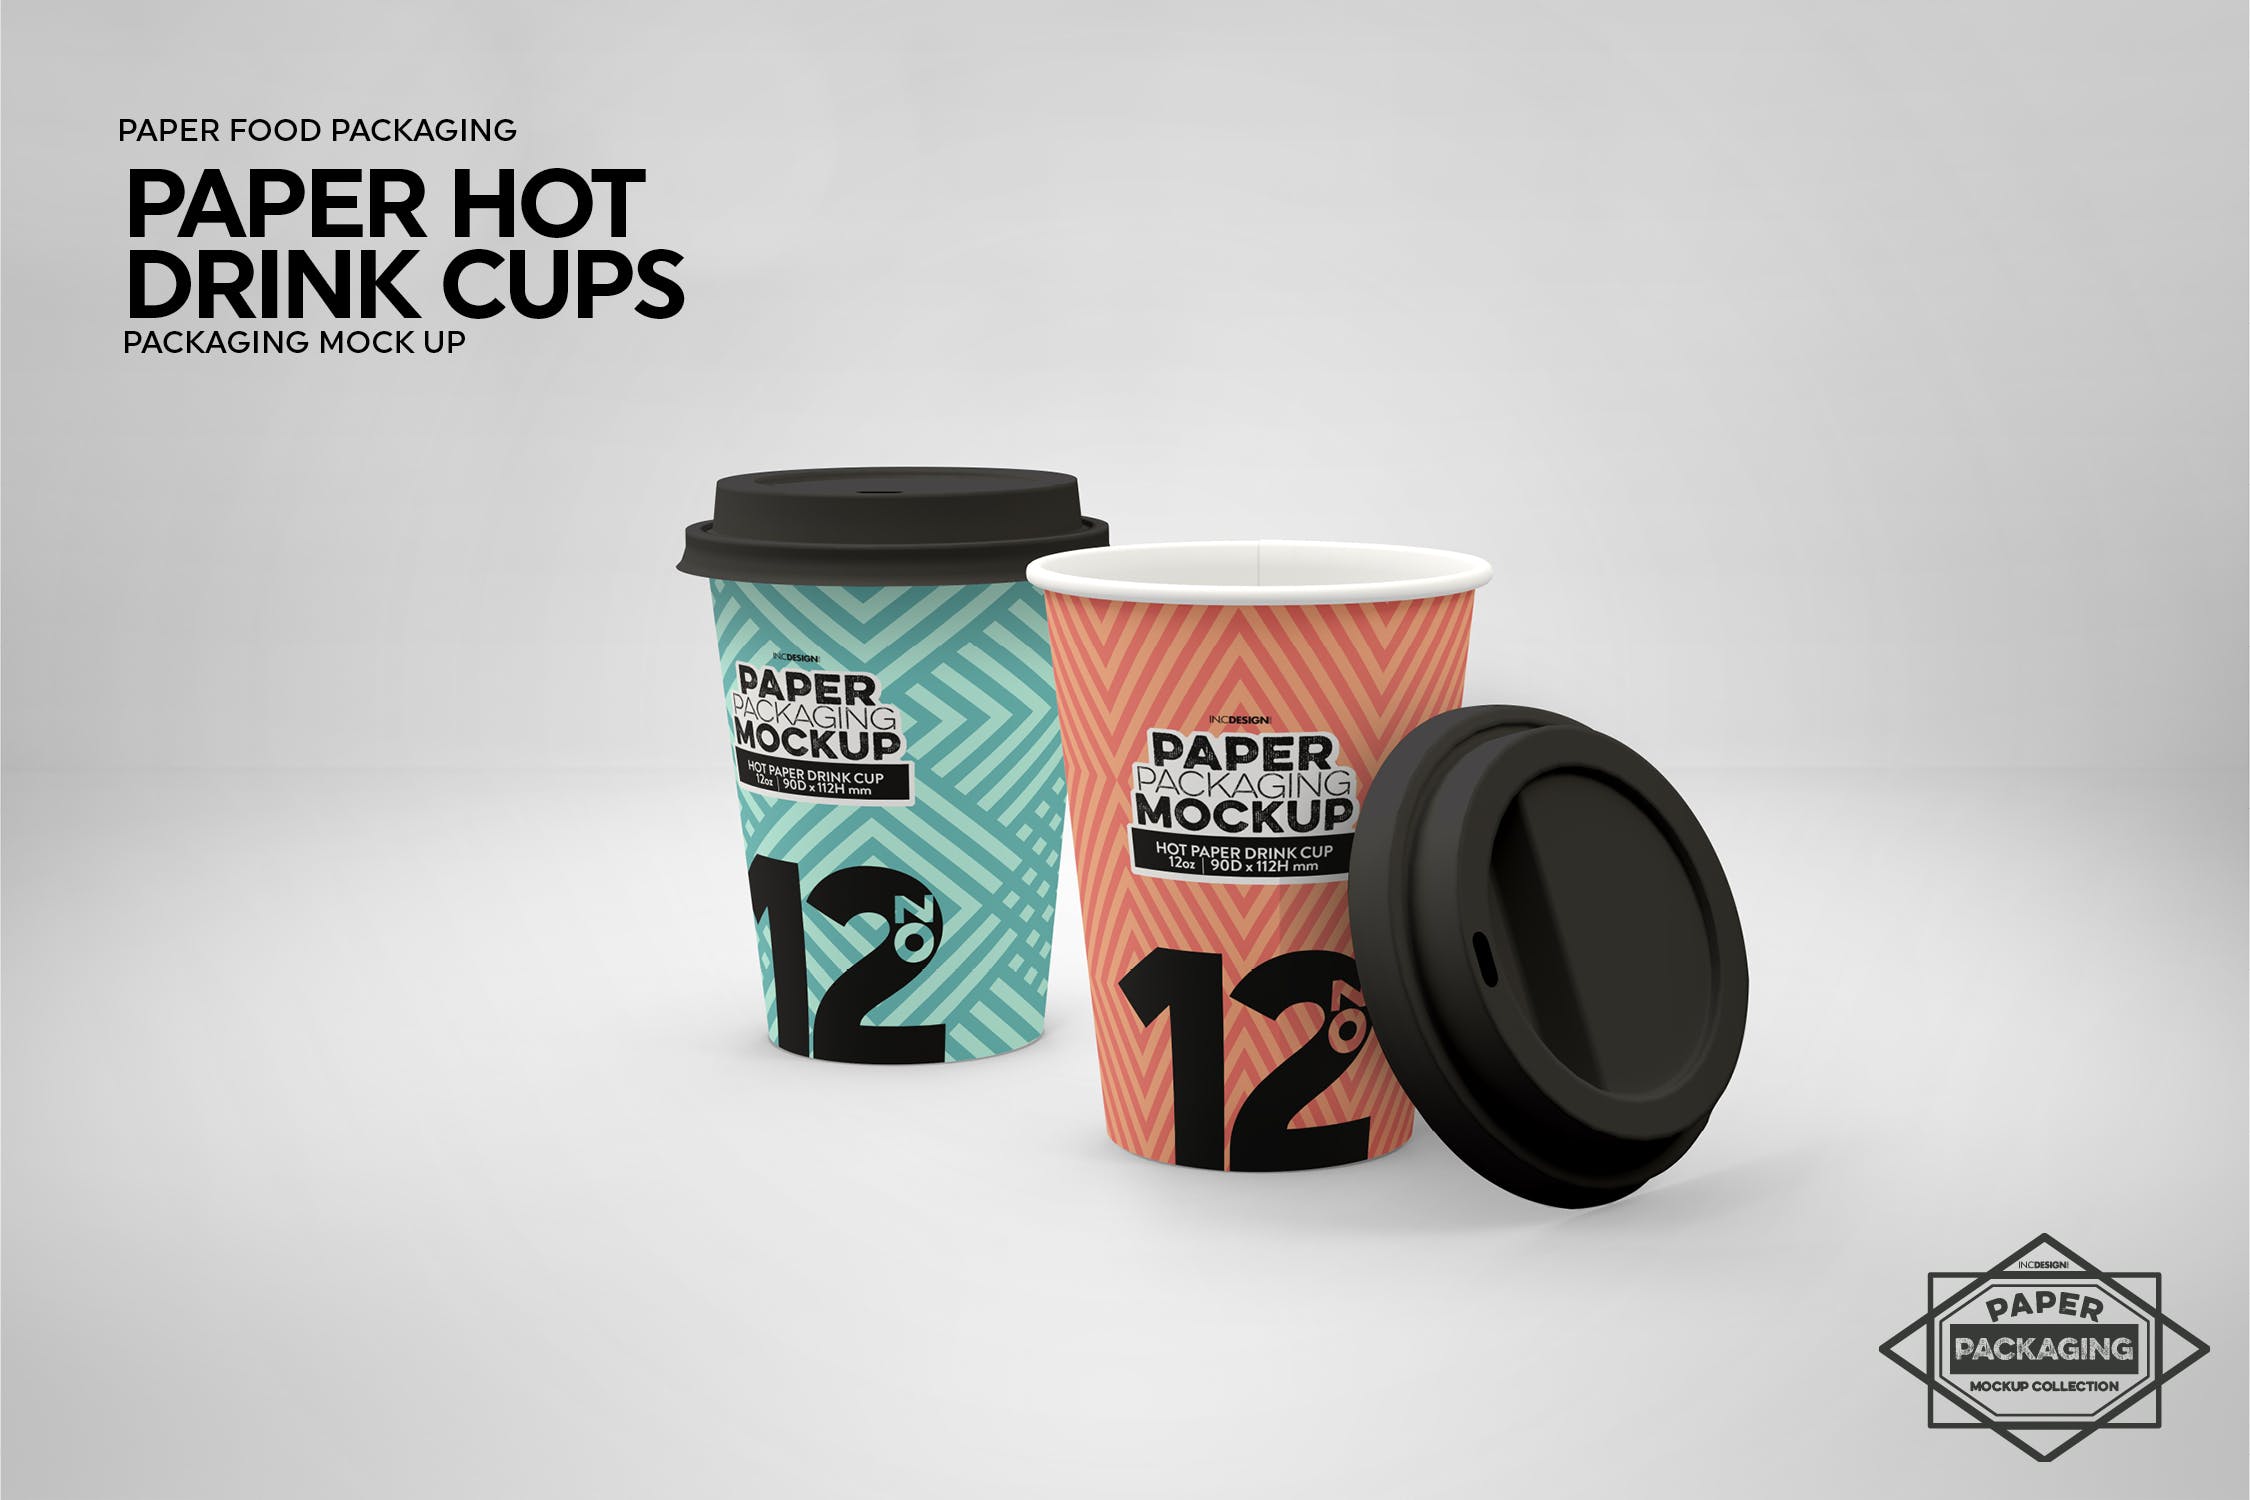 热饮一次性纸杯外观设计非凡图库精选 Paper Hot Drink Cups Packaging Mockup插图(10)